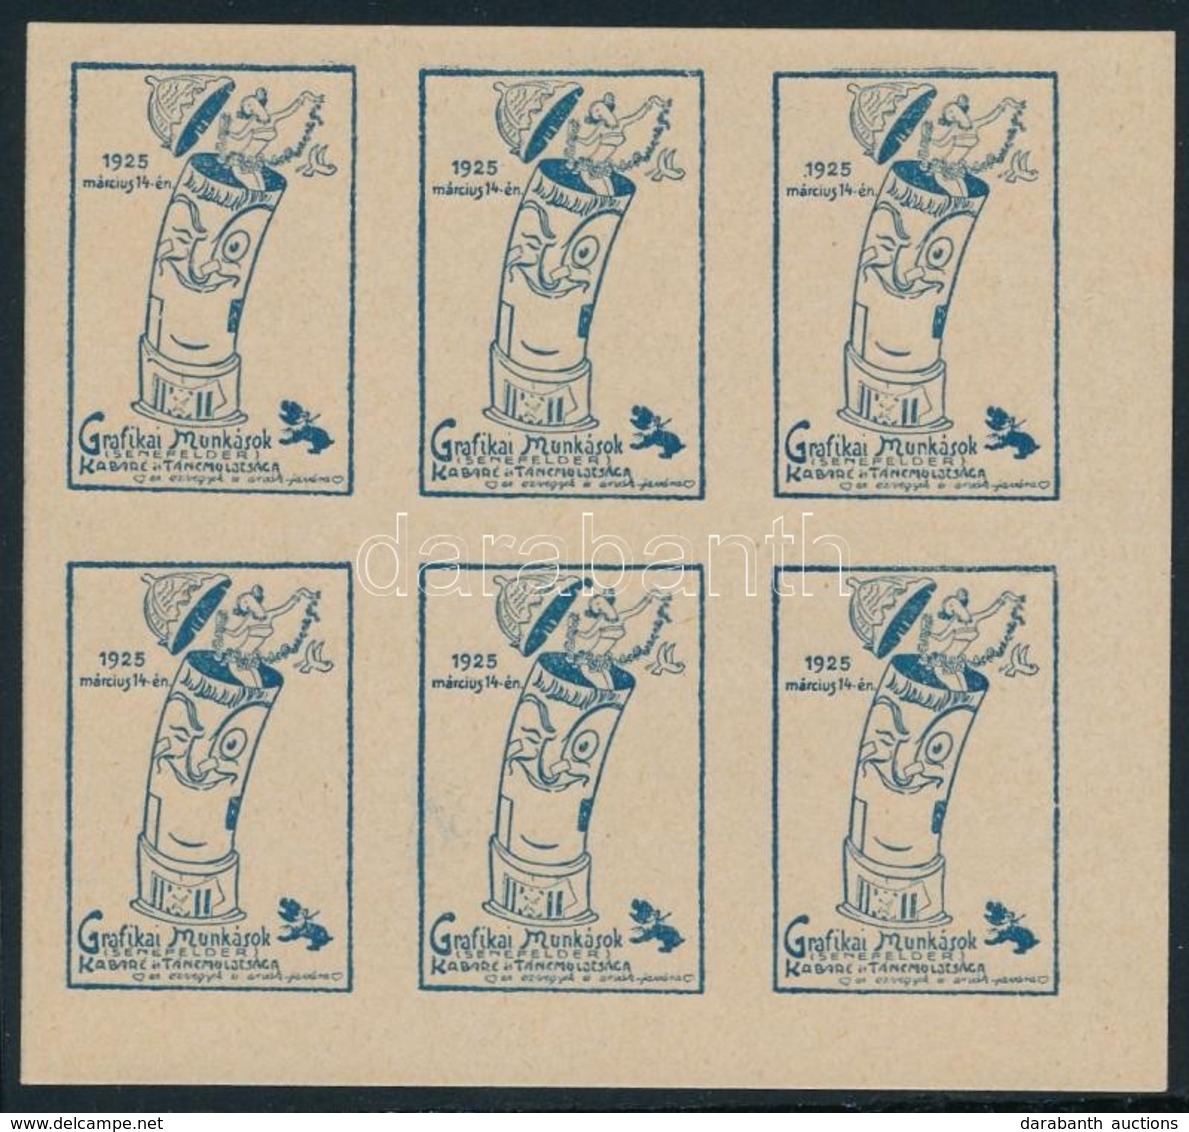 1925 Grafikai Munkások Kabaré és Táncestélye 6 Db-os Kék Levélzáró Tömb - Unclassified